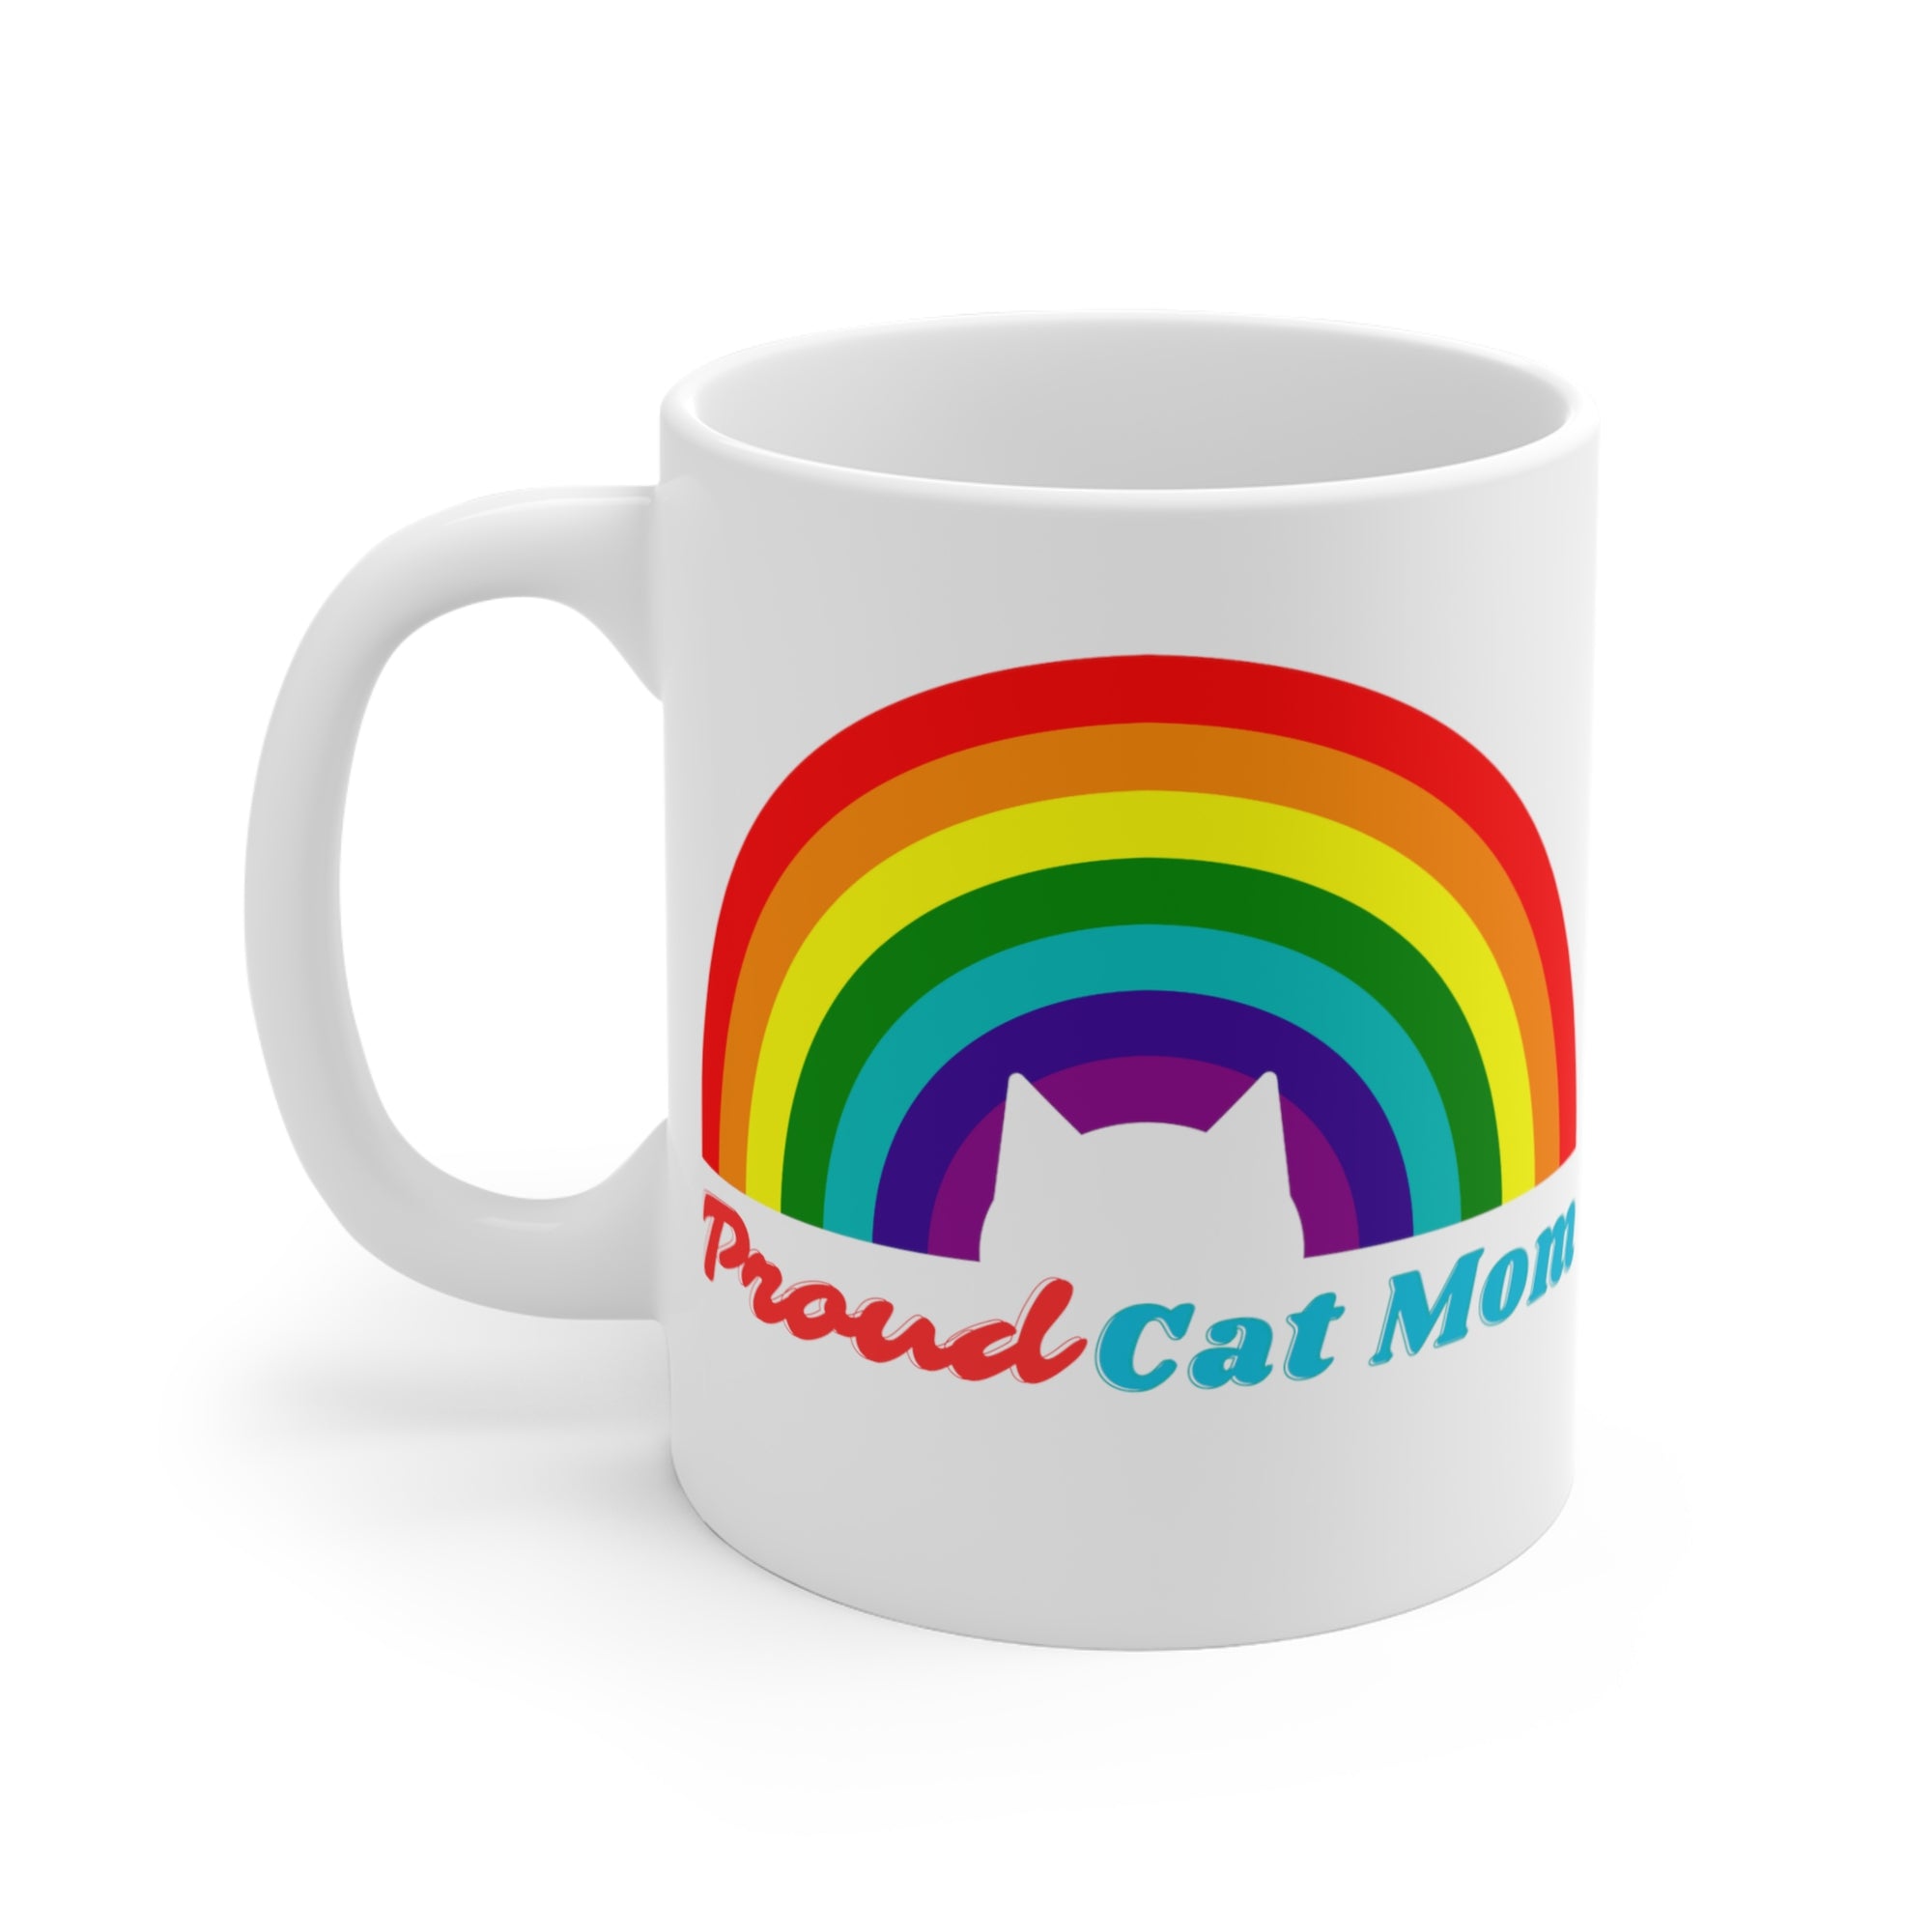 Proud Cat Dad or Proud Cat Mom - Rainbow Cat Coffee Mug